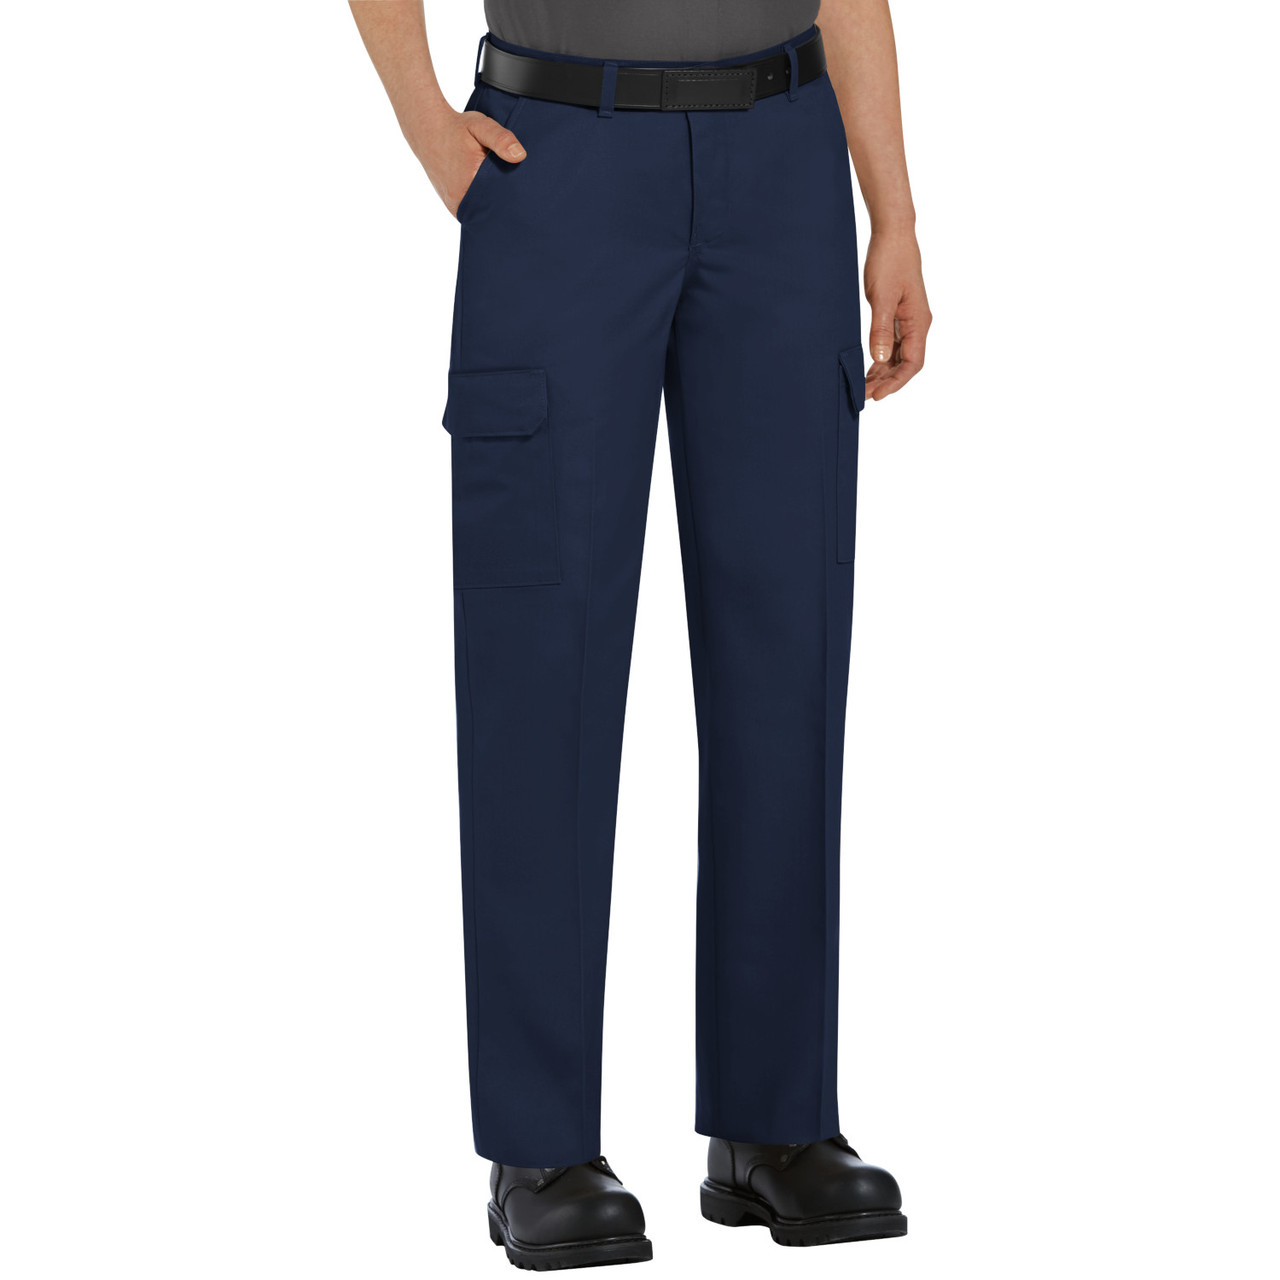 Pantalon Cargo Para Trabajo- Fabrica- Lea Calificaciones - $ 144